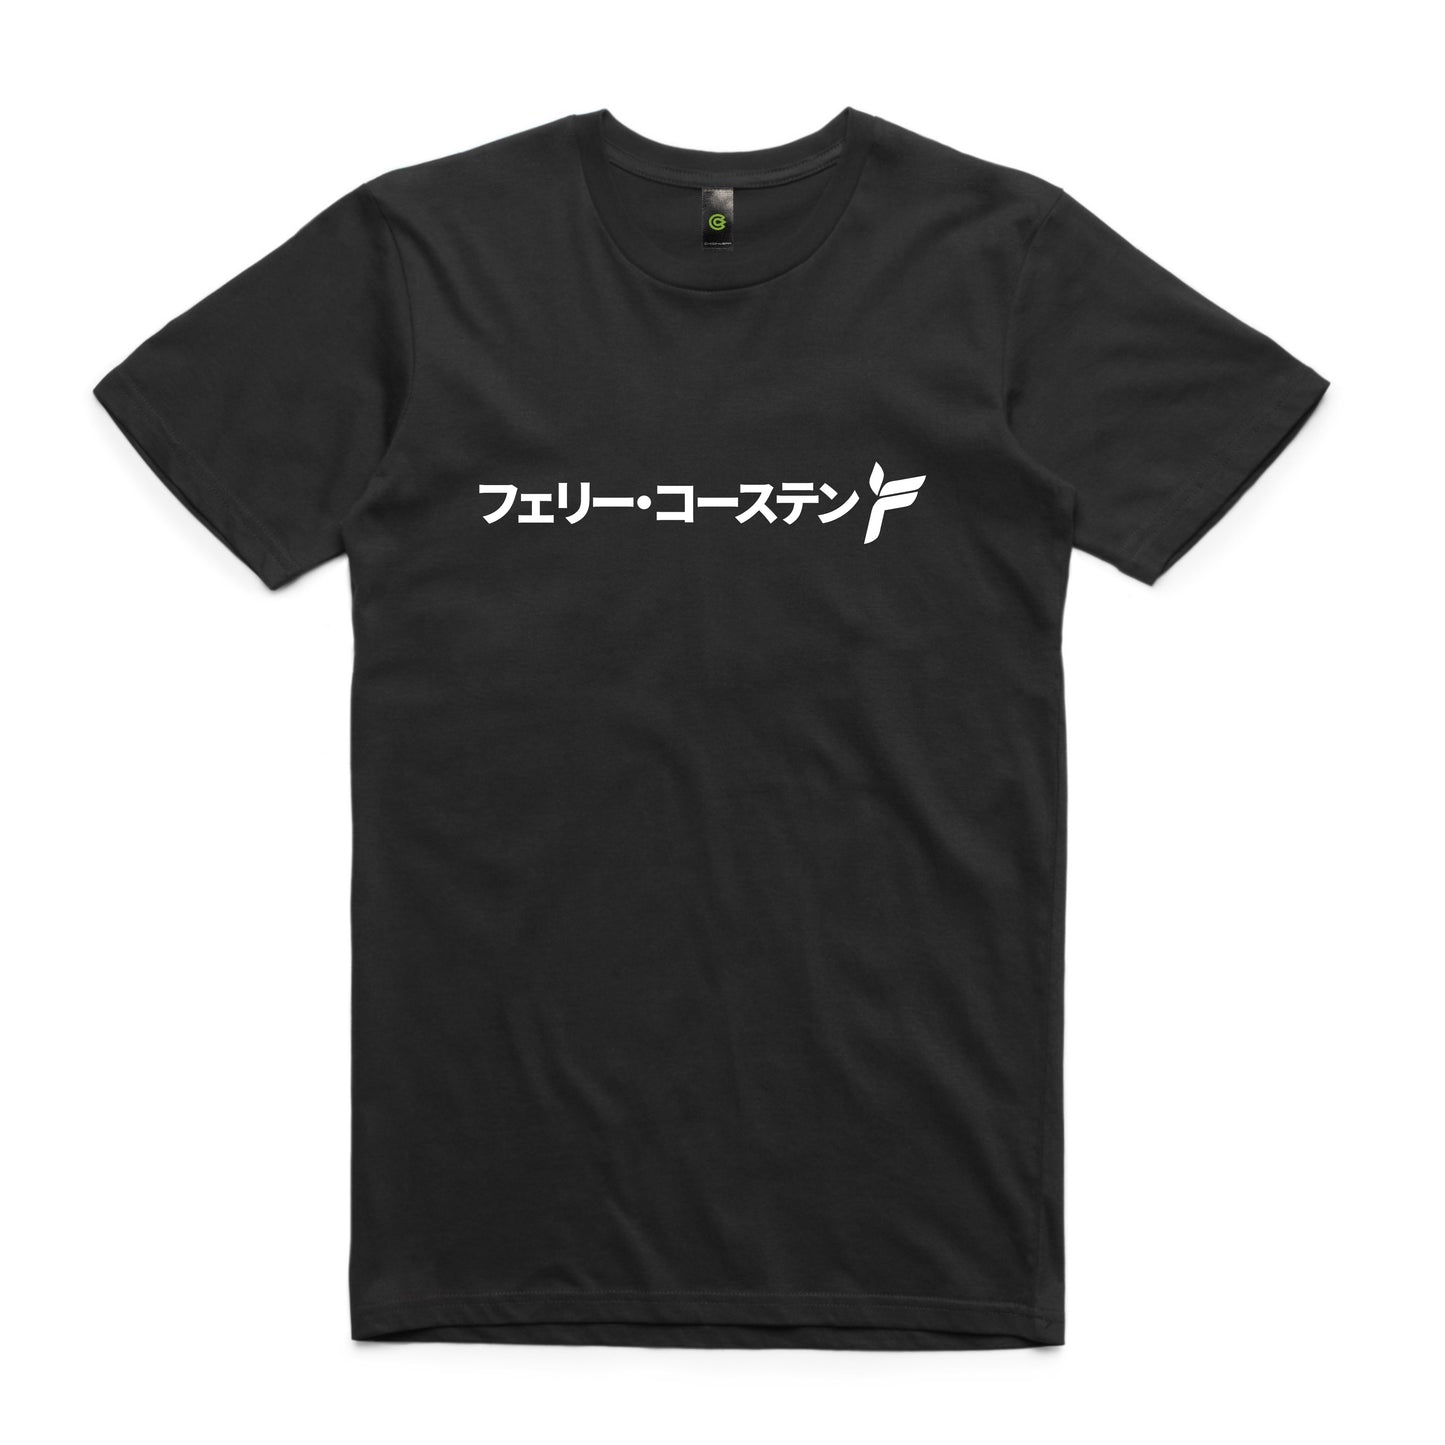 Ferry Corsten - Japanese logo tee